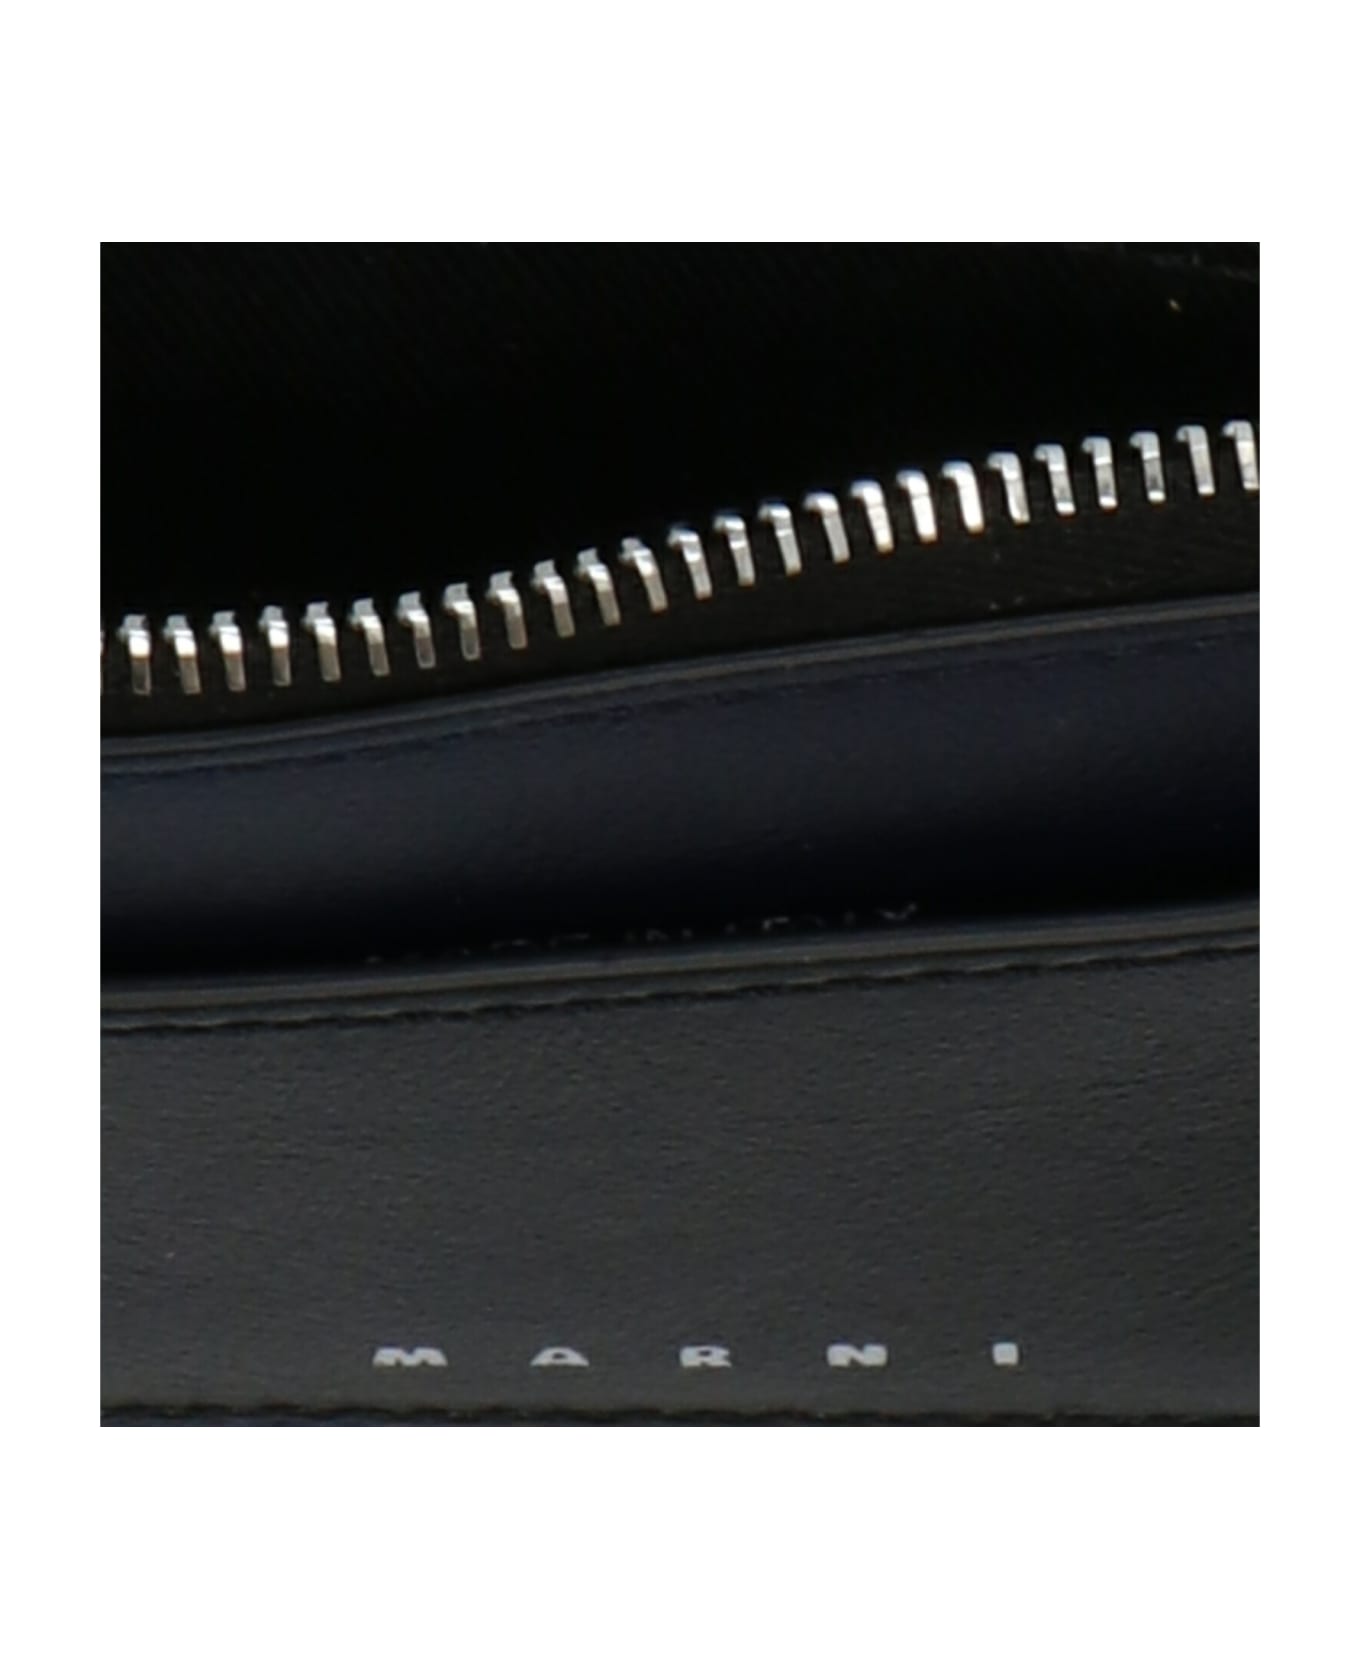 Marni Logo Leather Wallet - Multicolor 財布